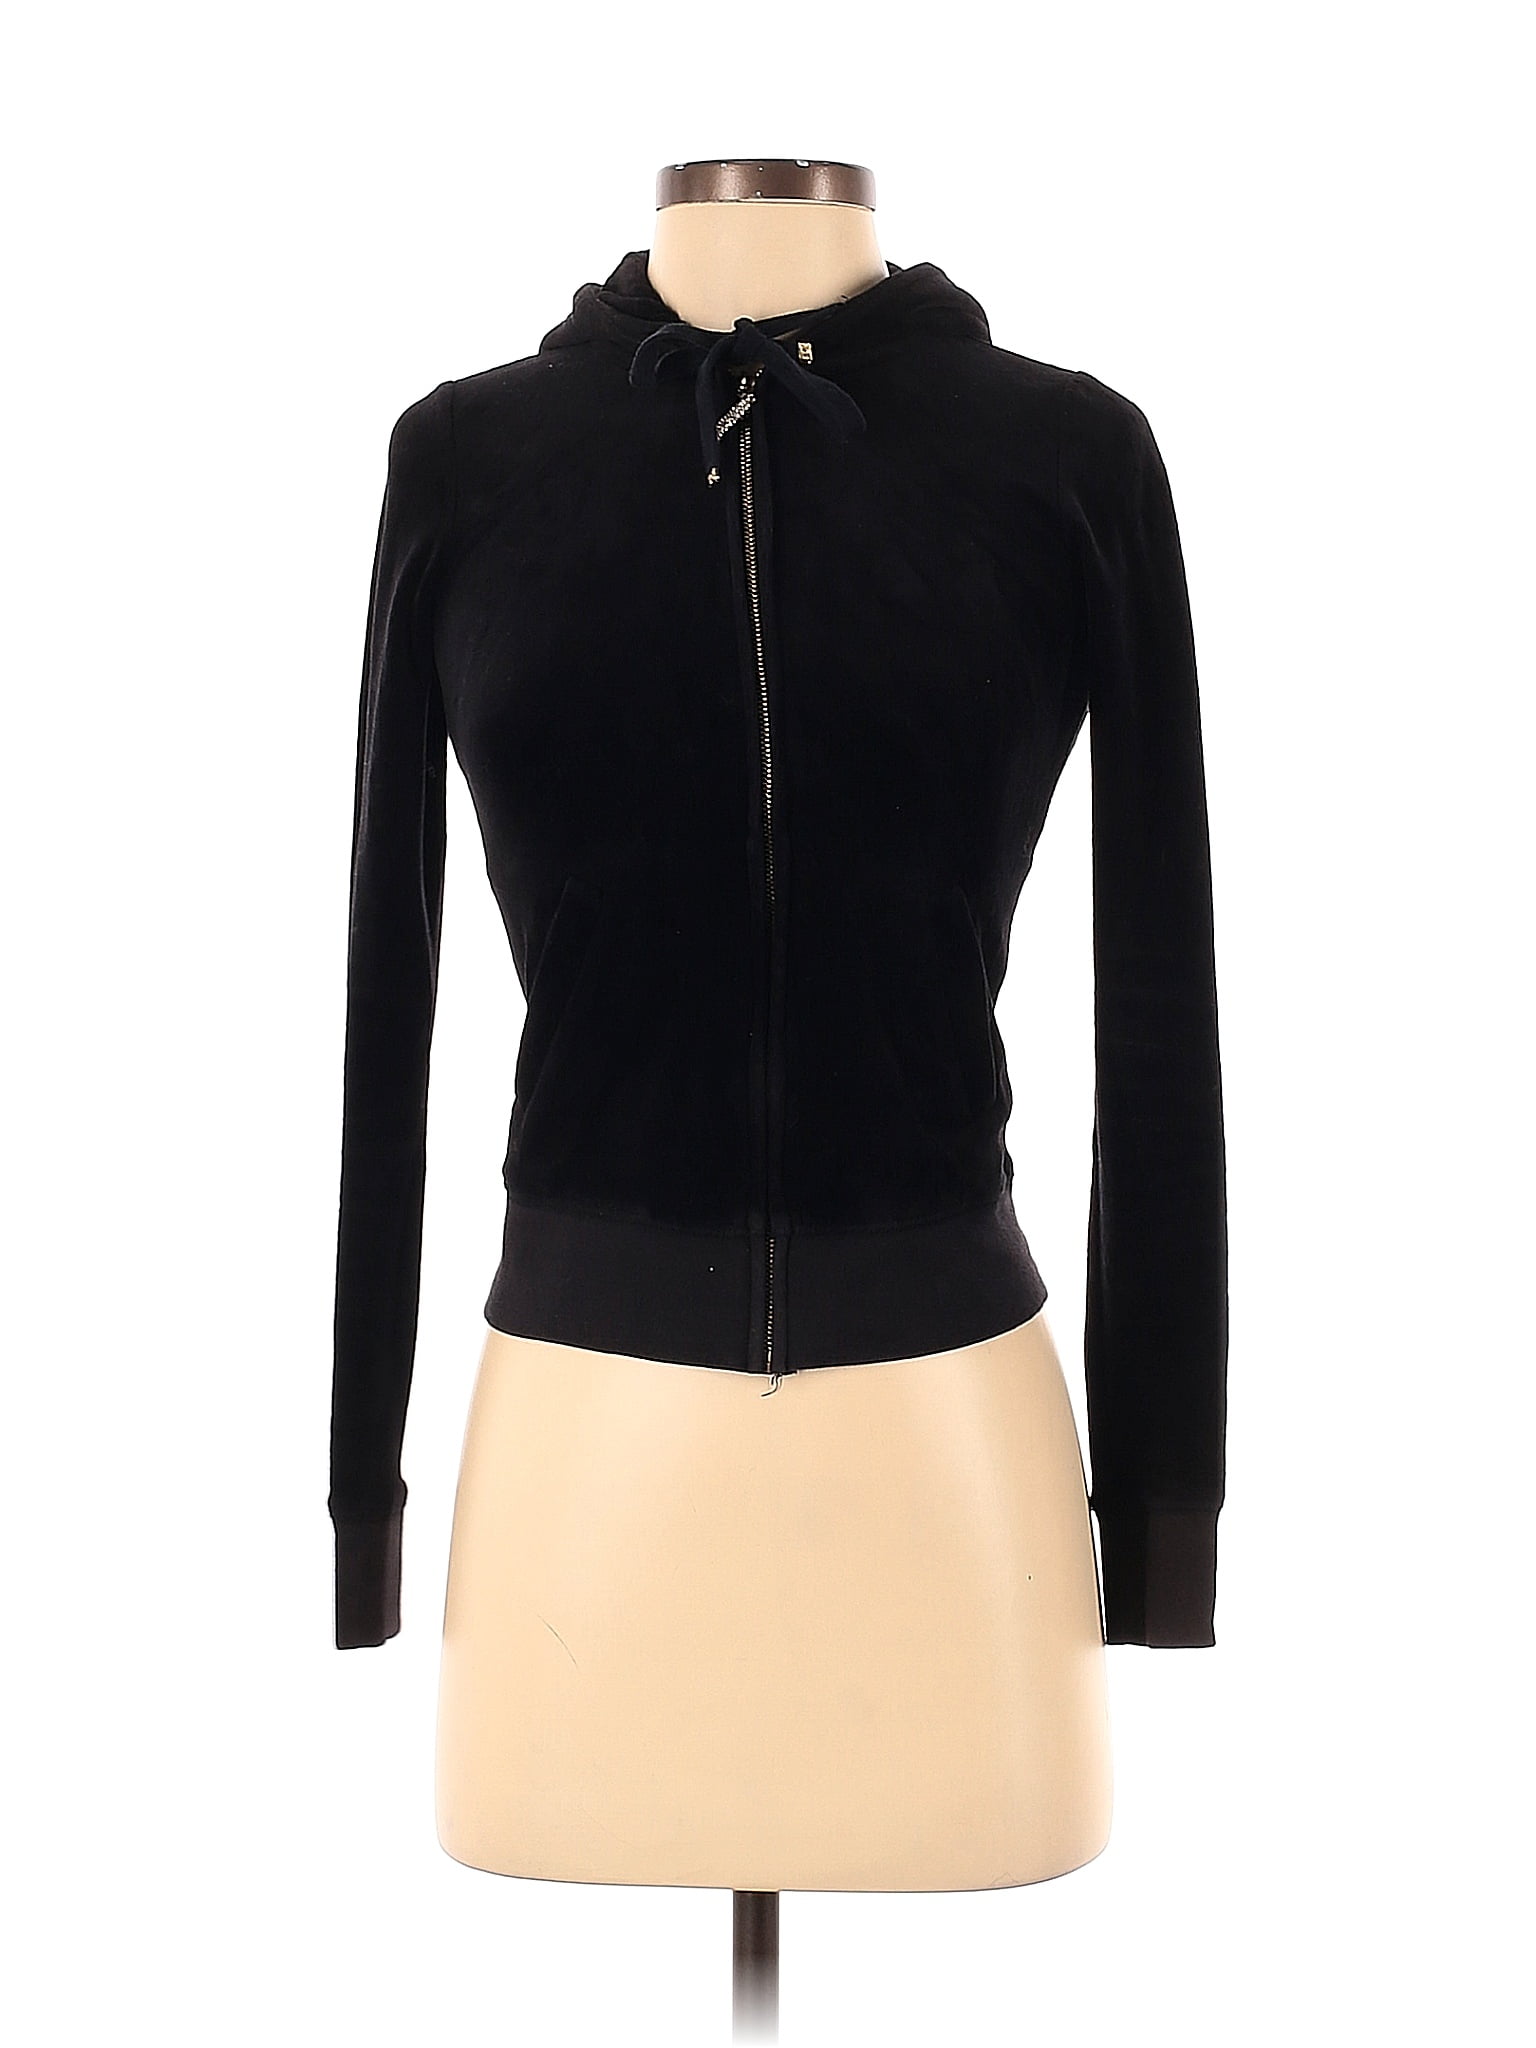 Juicy Couture Black Zip Up Hoodie Size XXS - 75% off | thredUP